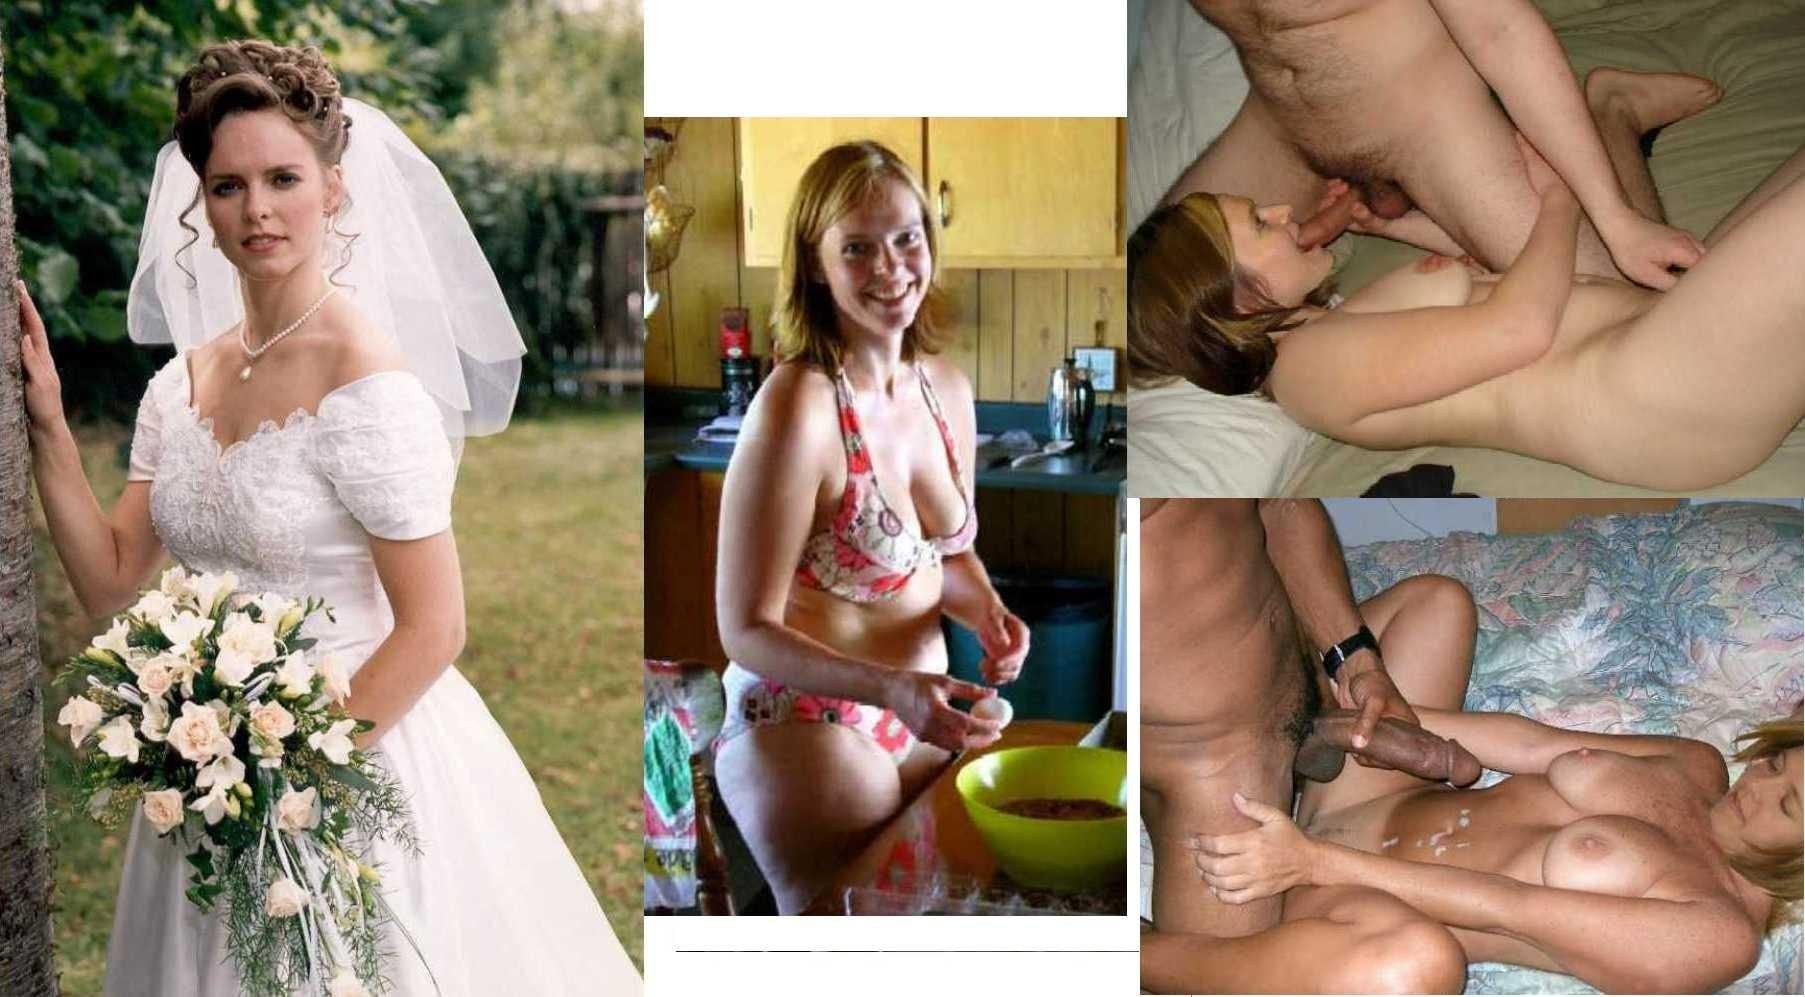 жена давала всем до свадьбы порно фото 22